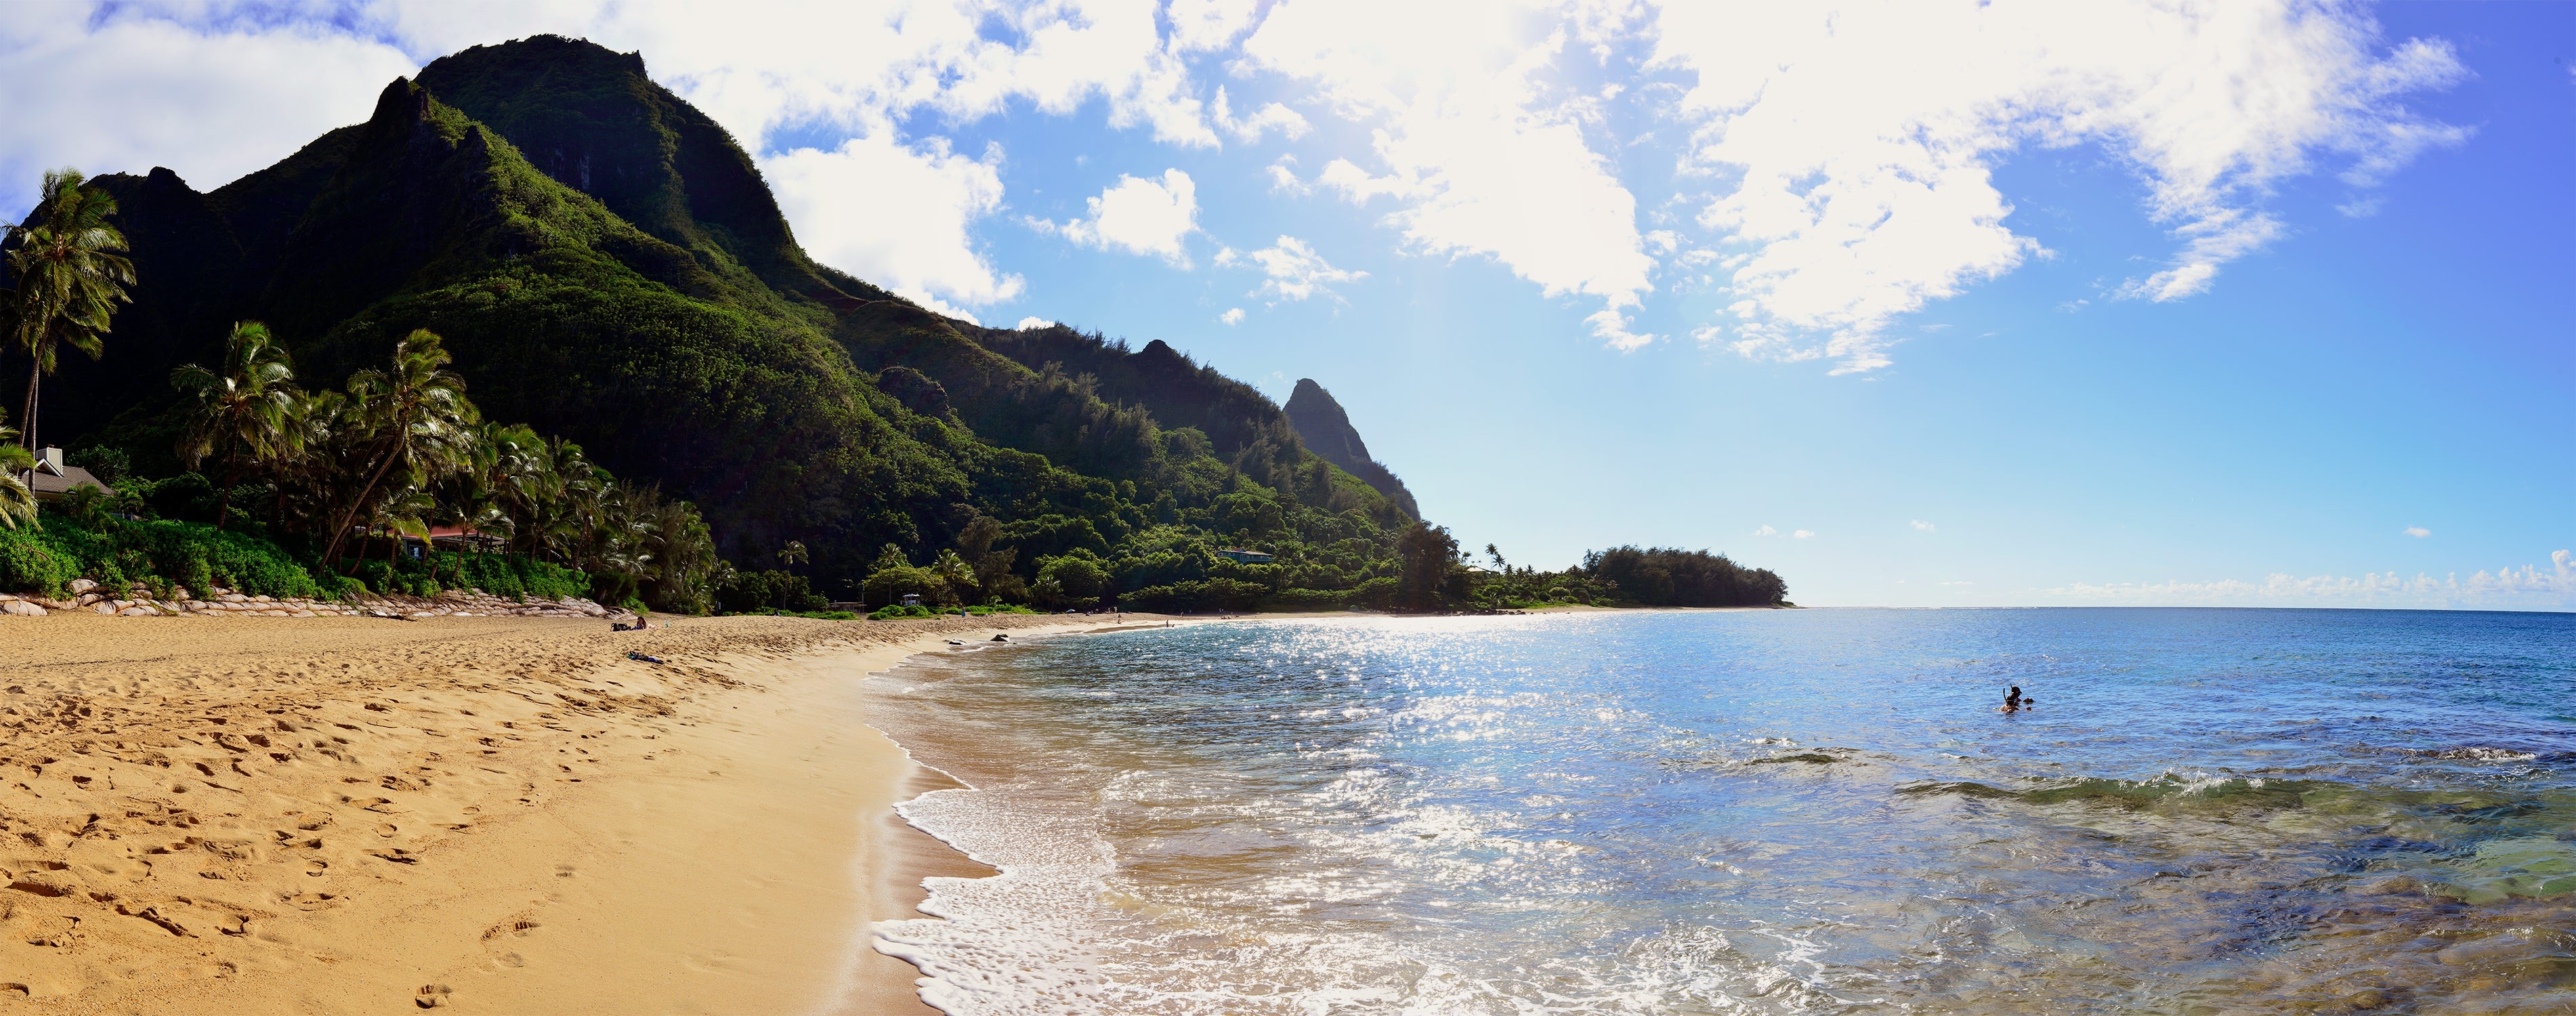 免费照片夏威夷的一个热带海滩